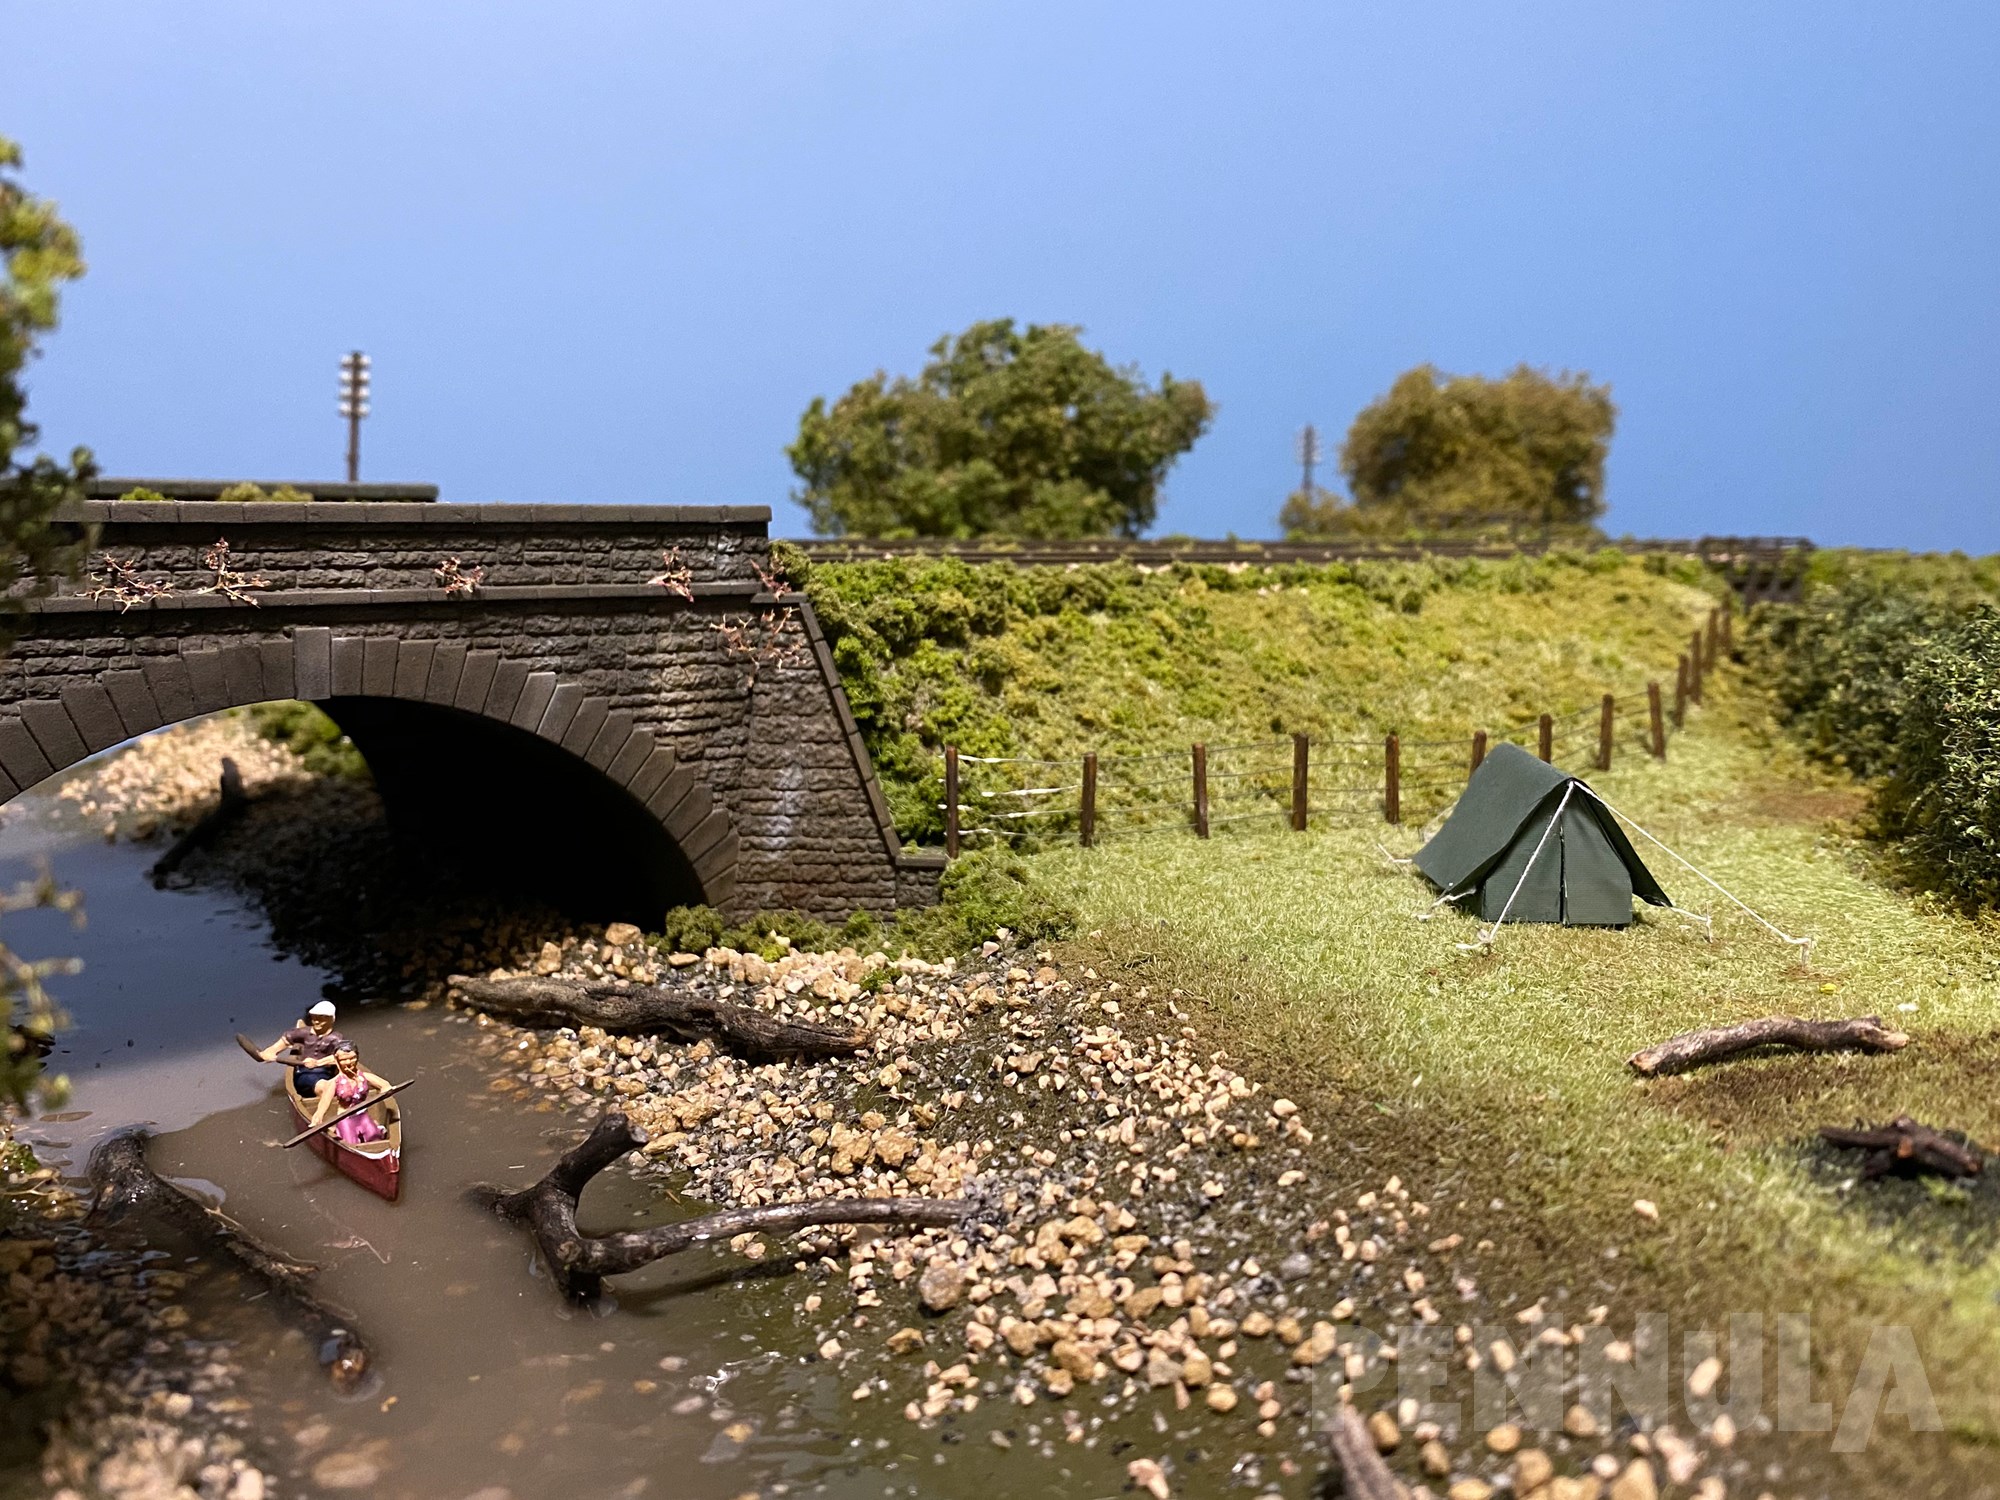 Eine englische Modellbahnanlage mit vorbildlicher Landschaftsgestaltung - Sehenswert!